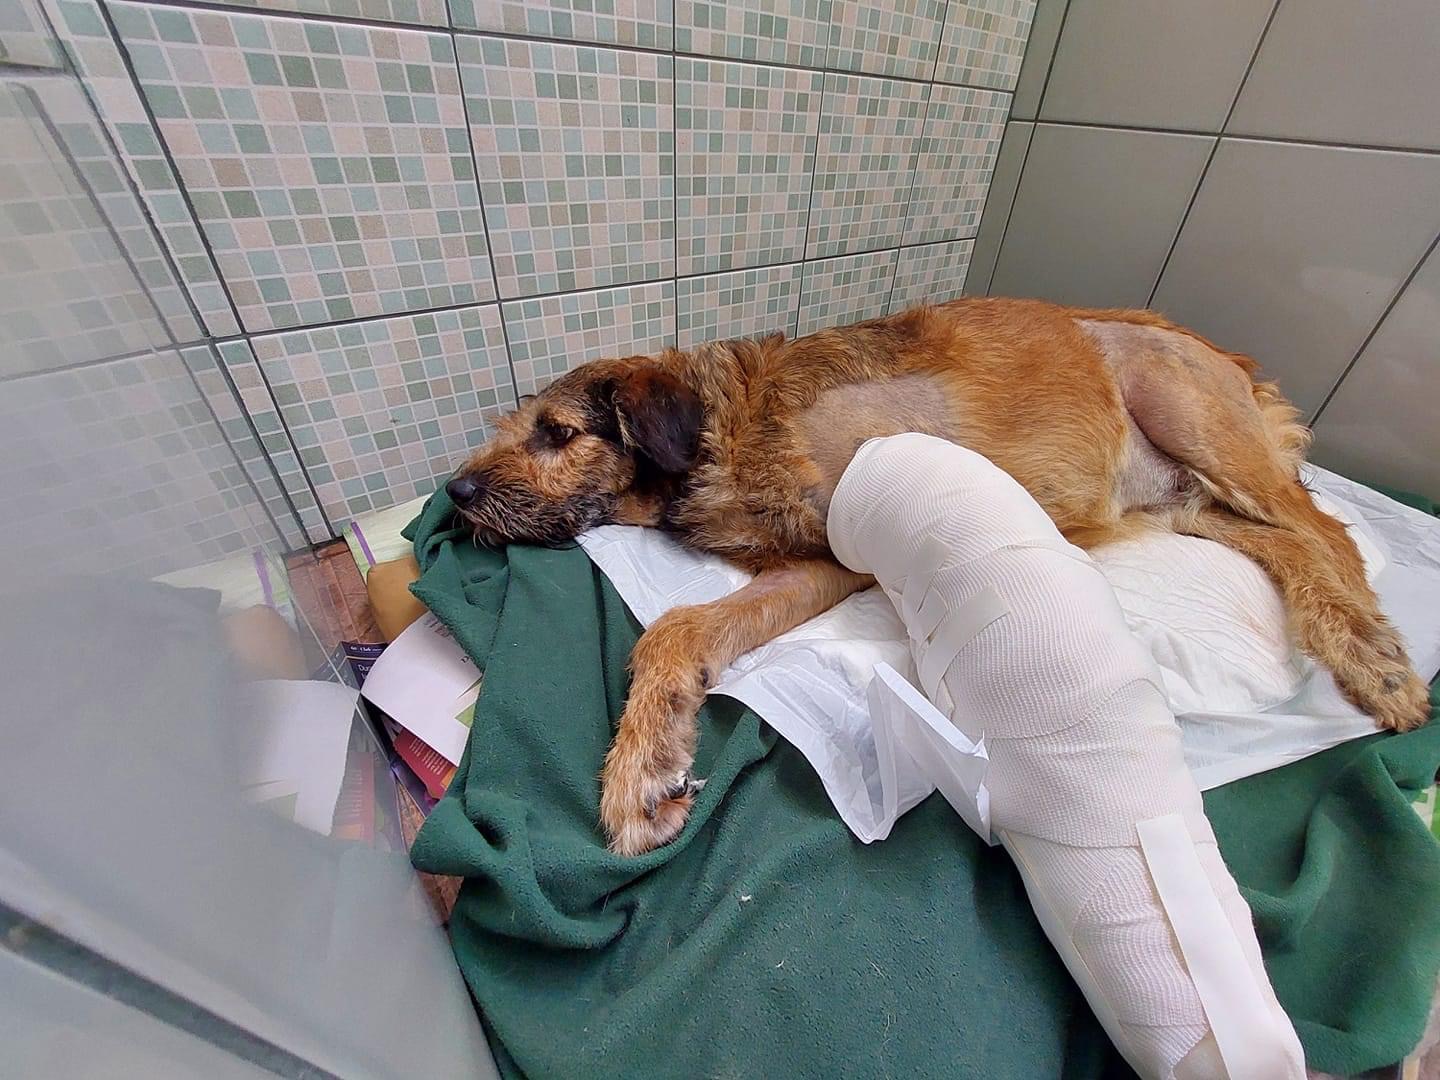 “Barbitas” perro rescatado de la Central de Abastos se sigue recuperando